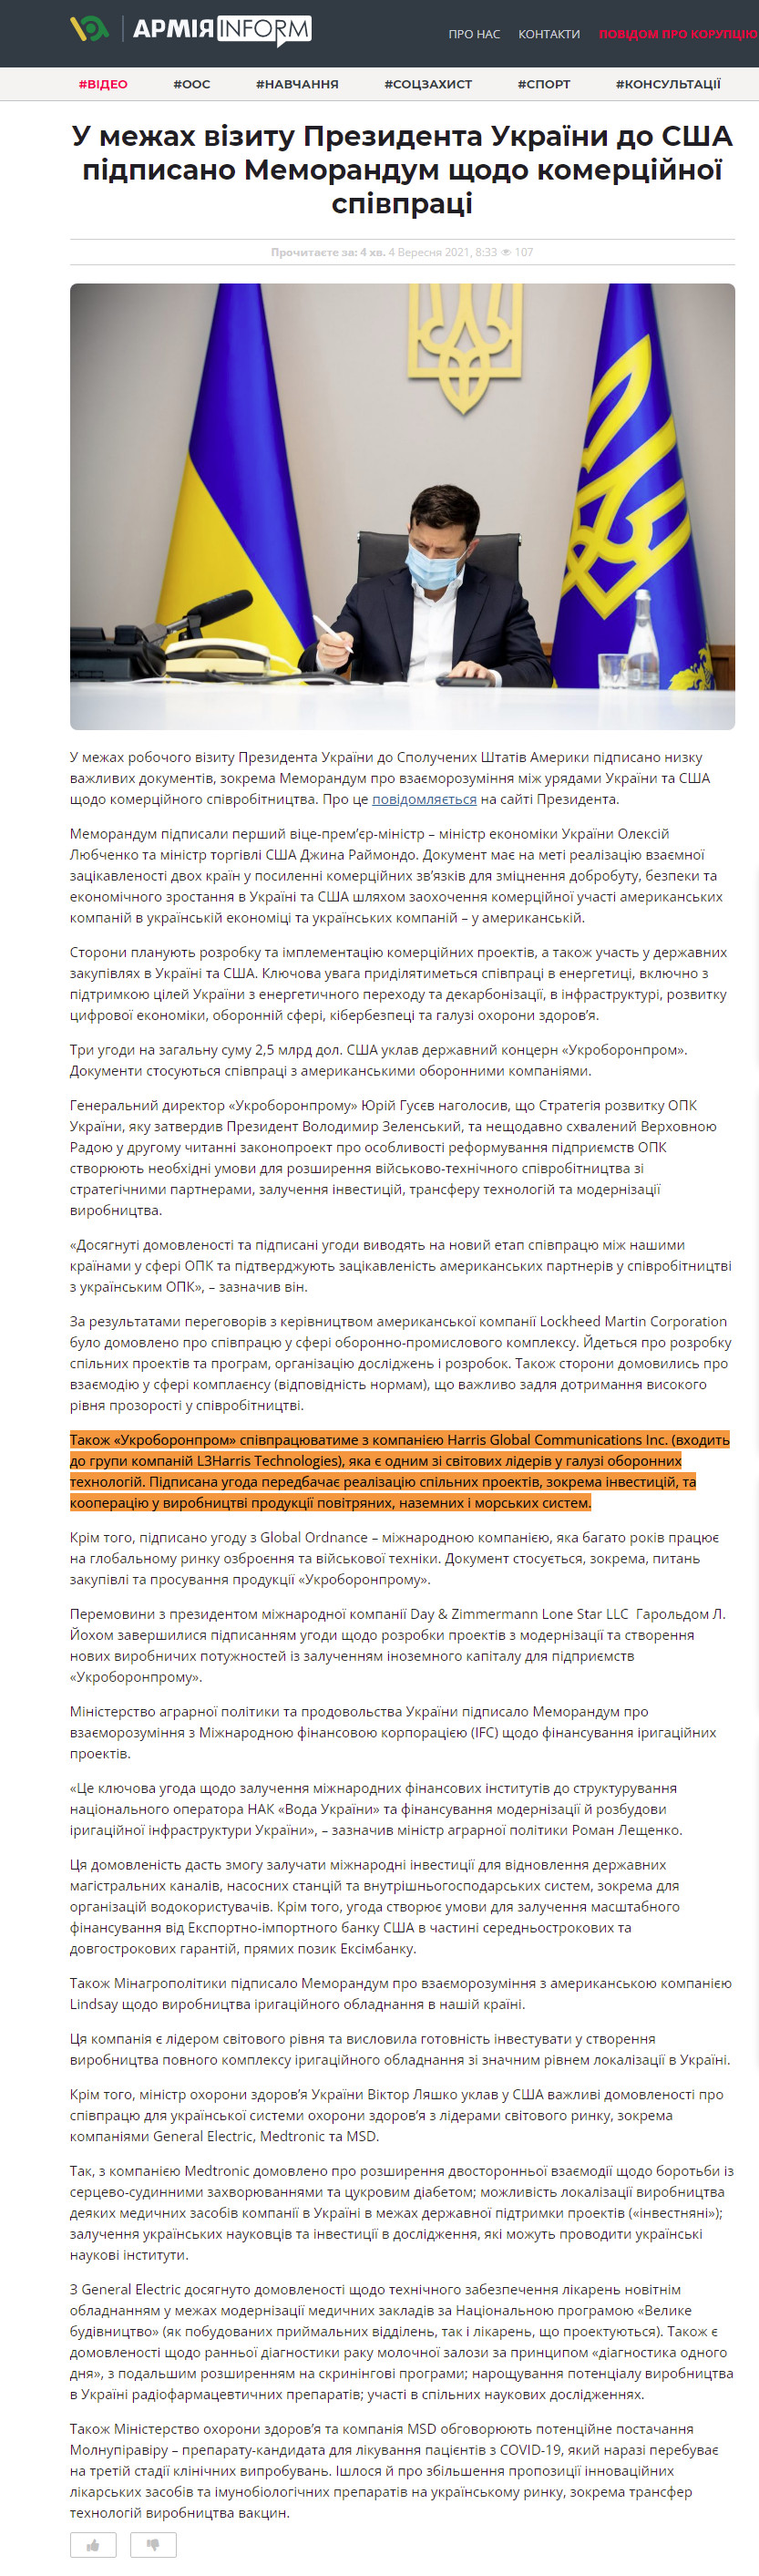 https://armyinform.com.ua/2021/09/u-mezhah-vizytu-prezydenta-ukrayiny-do-ssha-pidpysano-memorandum-shhodo-komerczijnoyi-spivpraczi-ta-nyzku-vazhlyvyh-dokumentiv-po-liniyi-ukroboronpromu-minagropolityky-ta-moz/